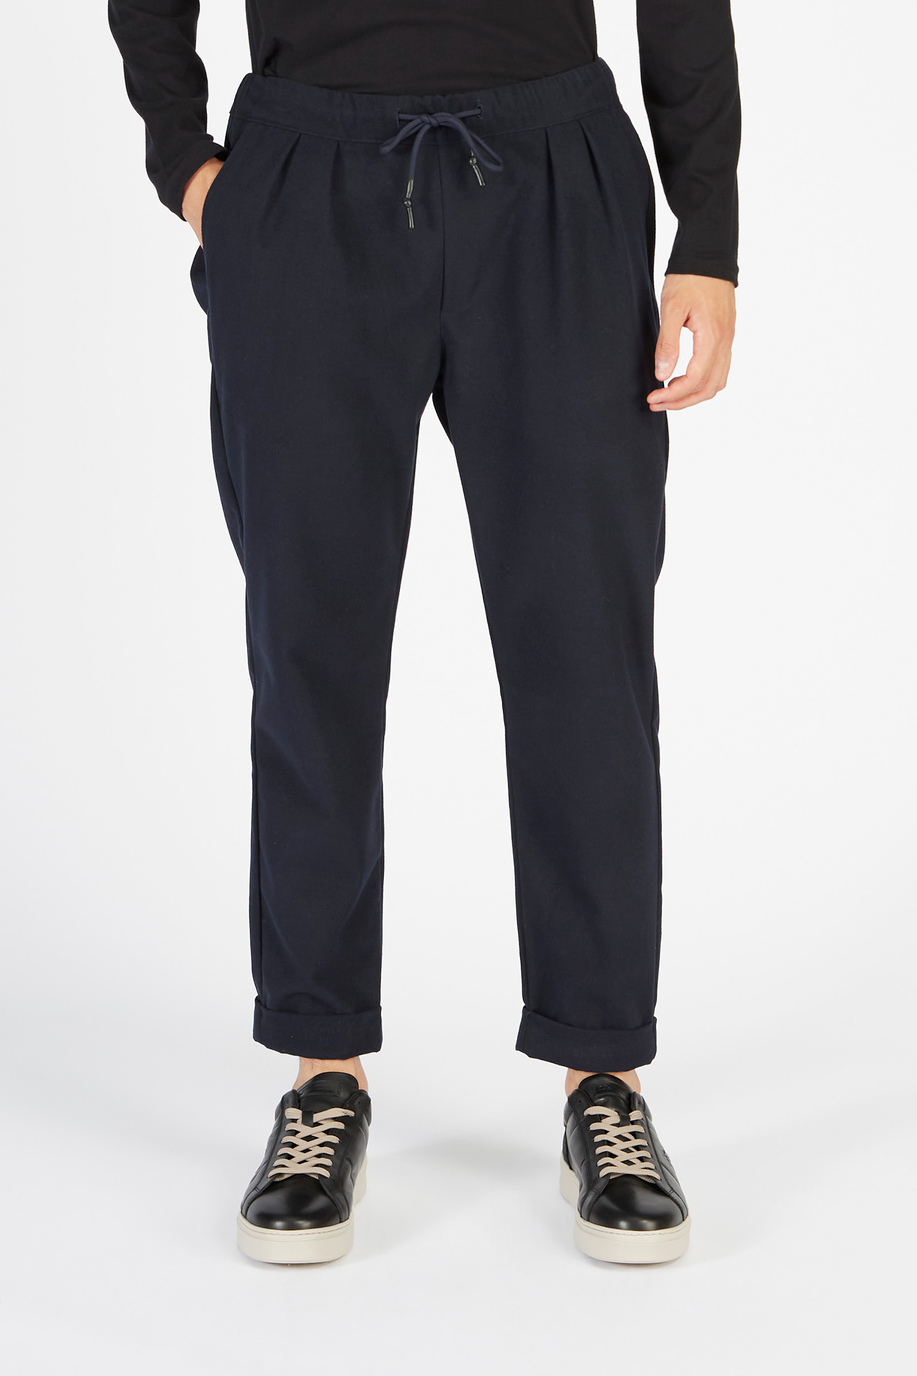 Pantalone Timeless uomo tessuto misto in flanella regular fit - La stagione delle feste per lui | La Martina - Official Online Shop